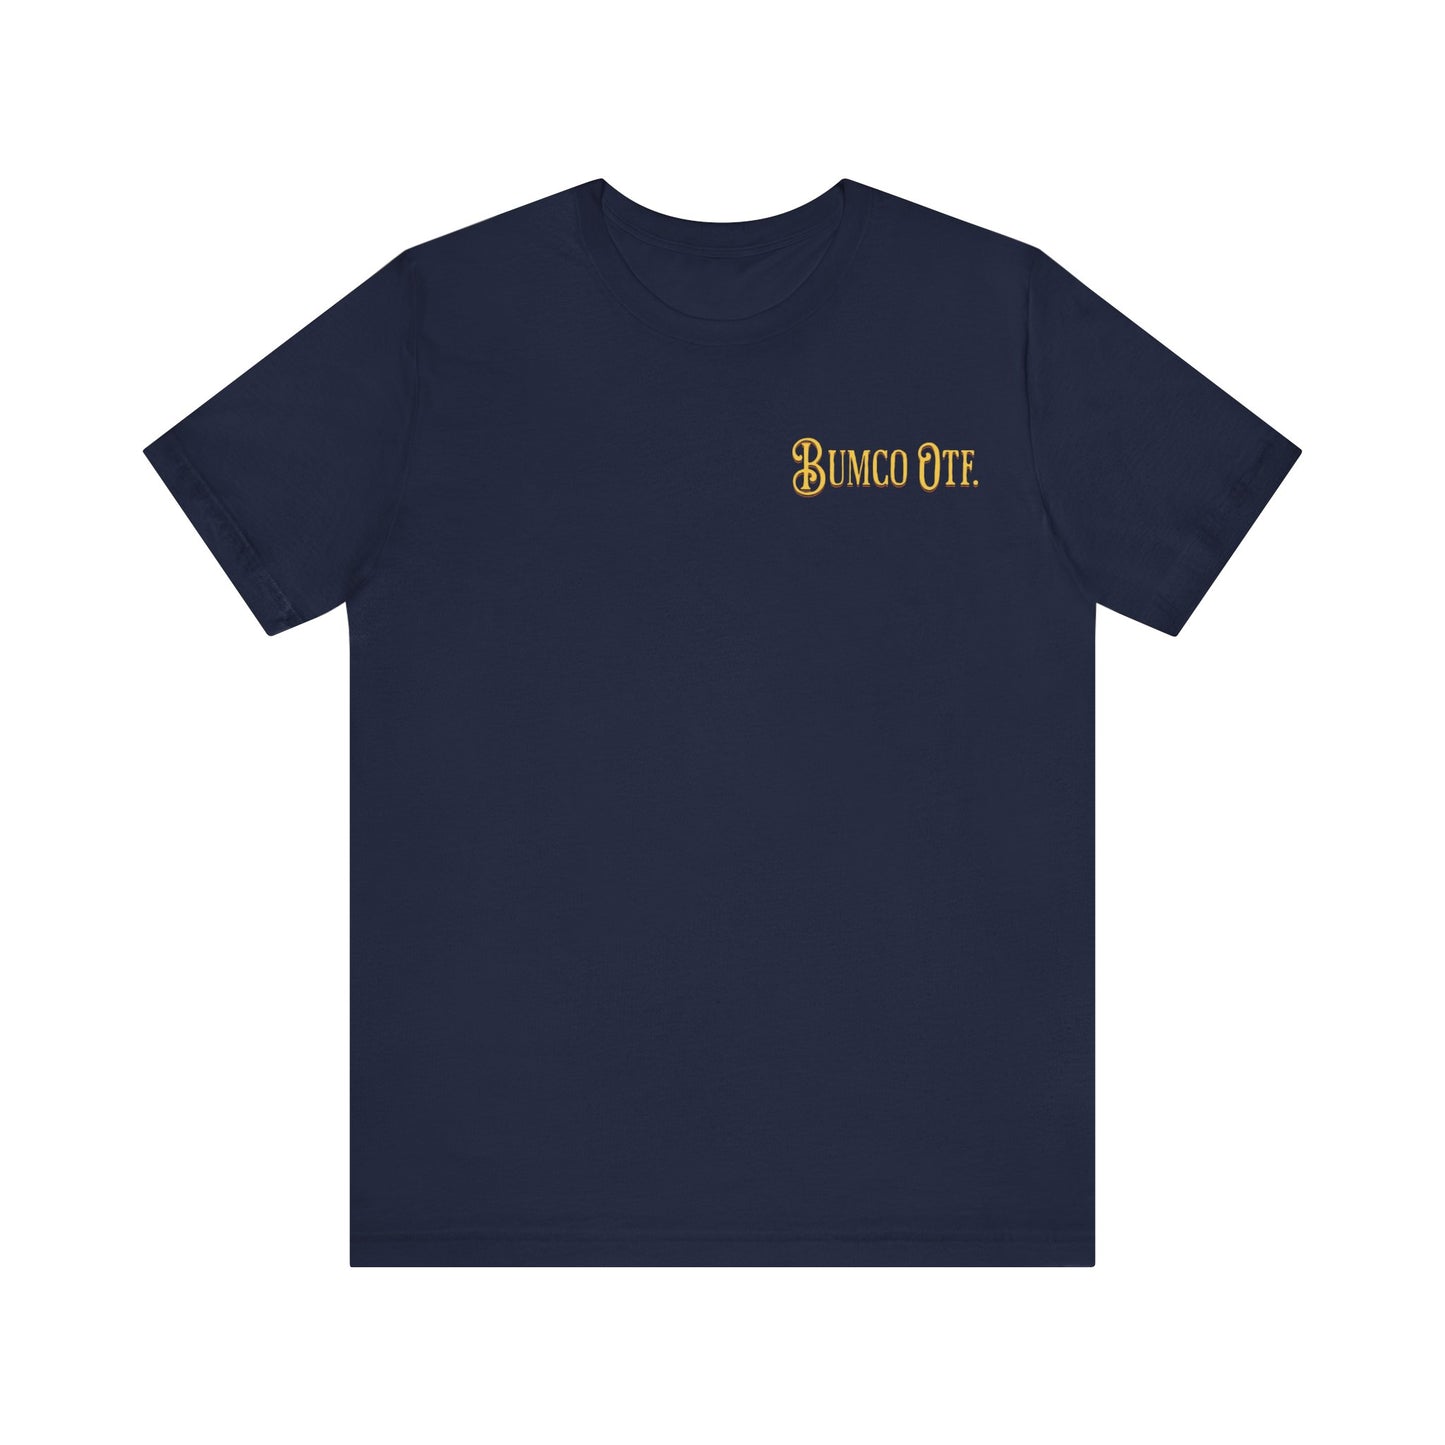 Retriever Fever - T-Shirt